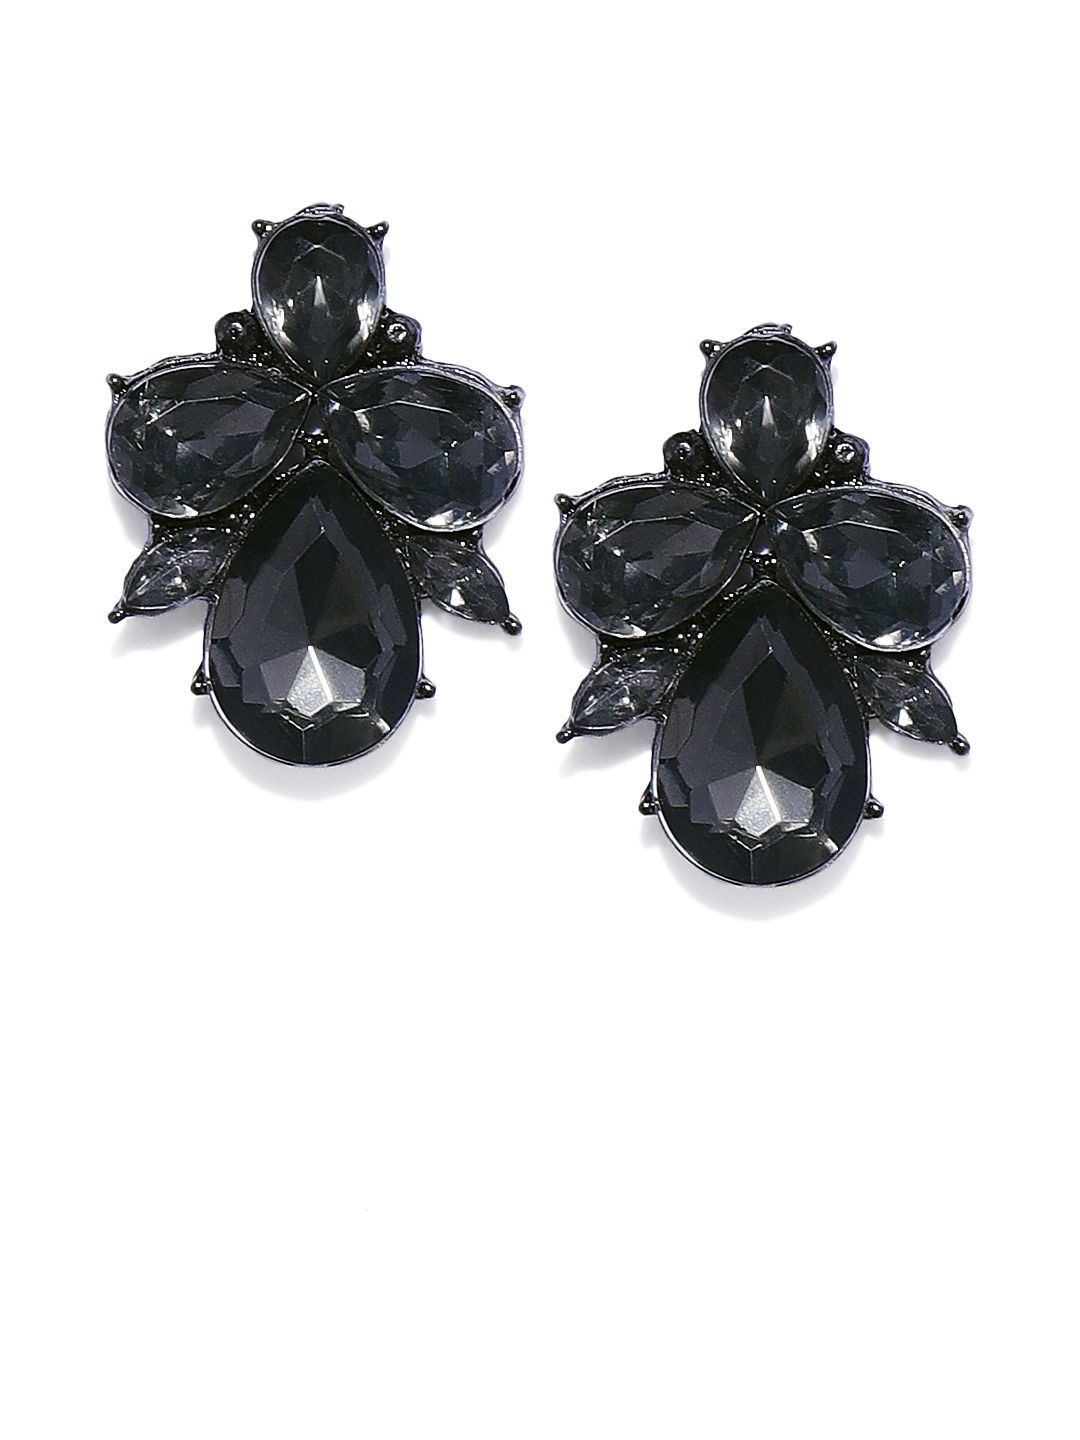 OOMPH Black Crystal Floral Ear Stud Earrings Price in India